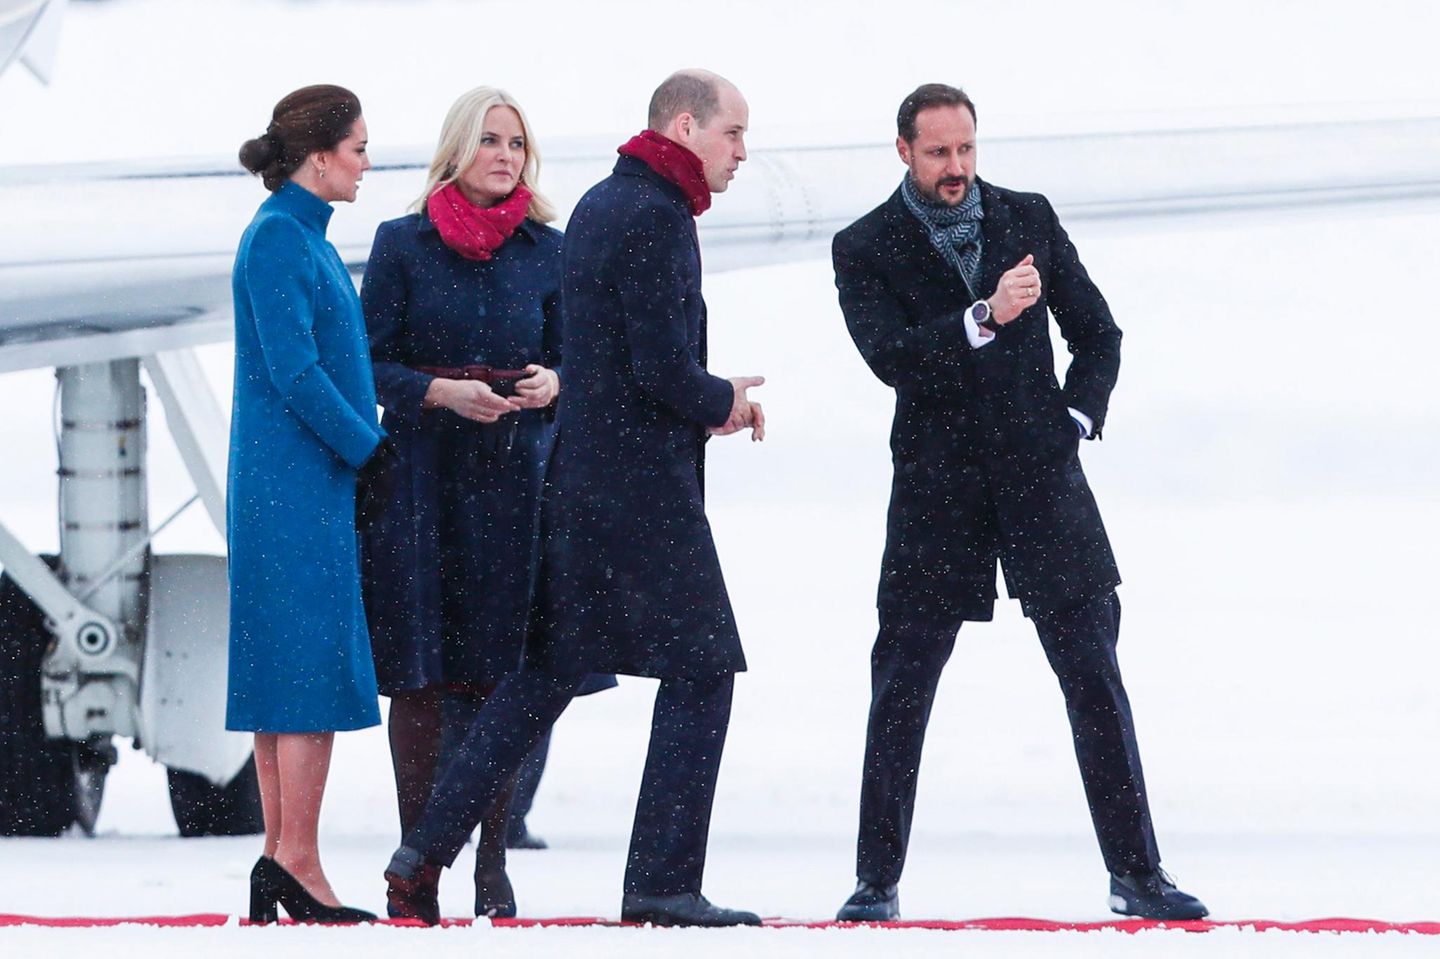 Norwegen - Tag 2   Prinz Haakon weißt den Weg: Auf Catherine und William wartet ein ereignisreicher Tag im verschneiten Norwegen.